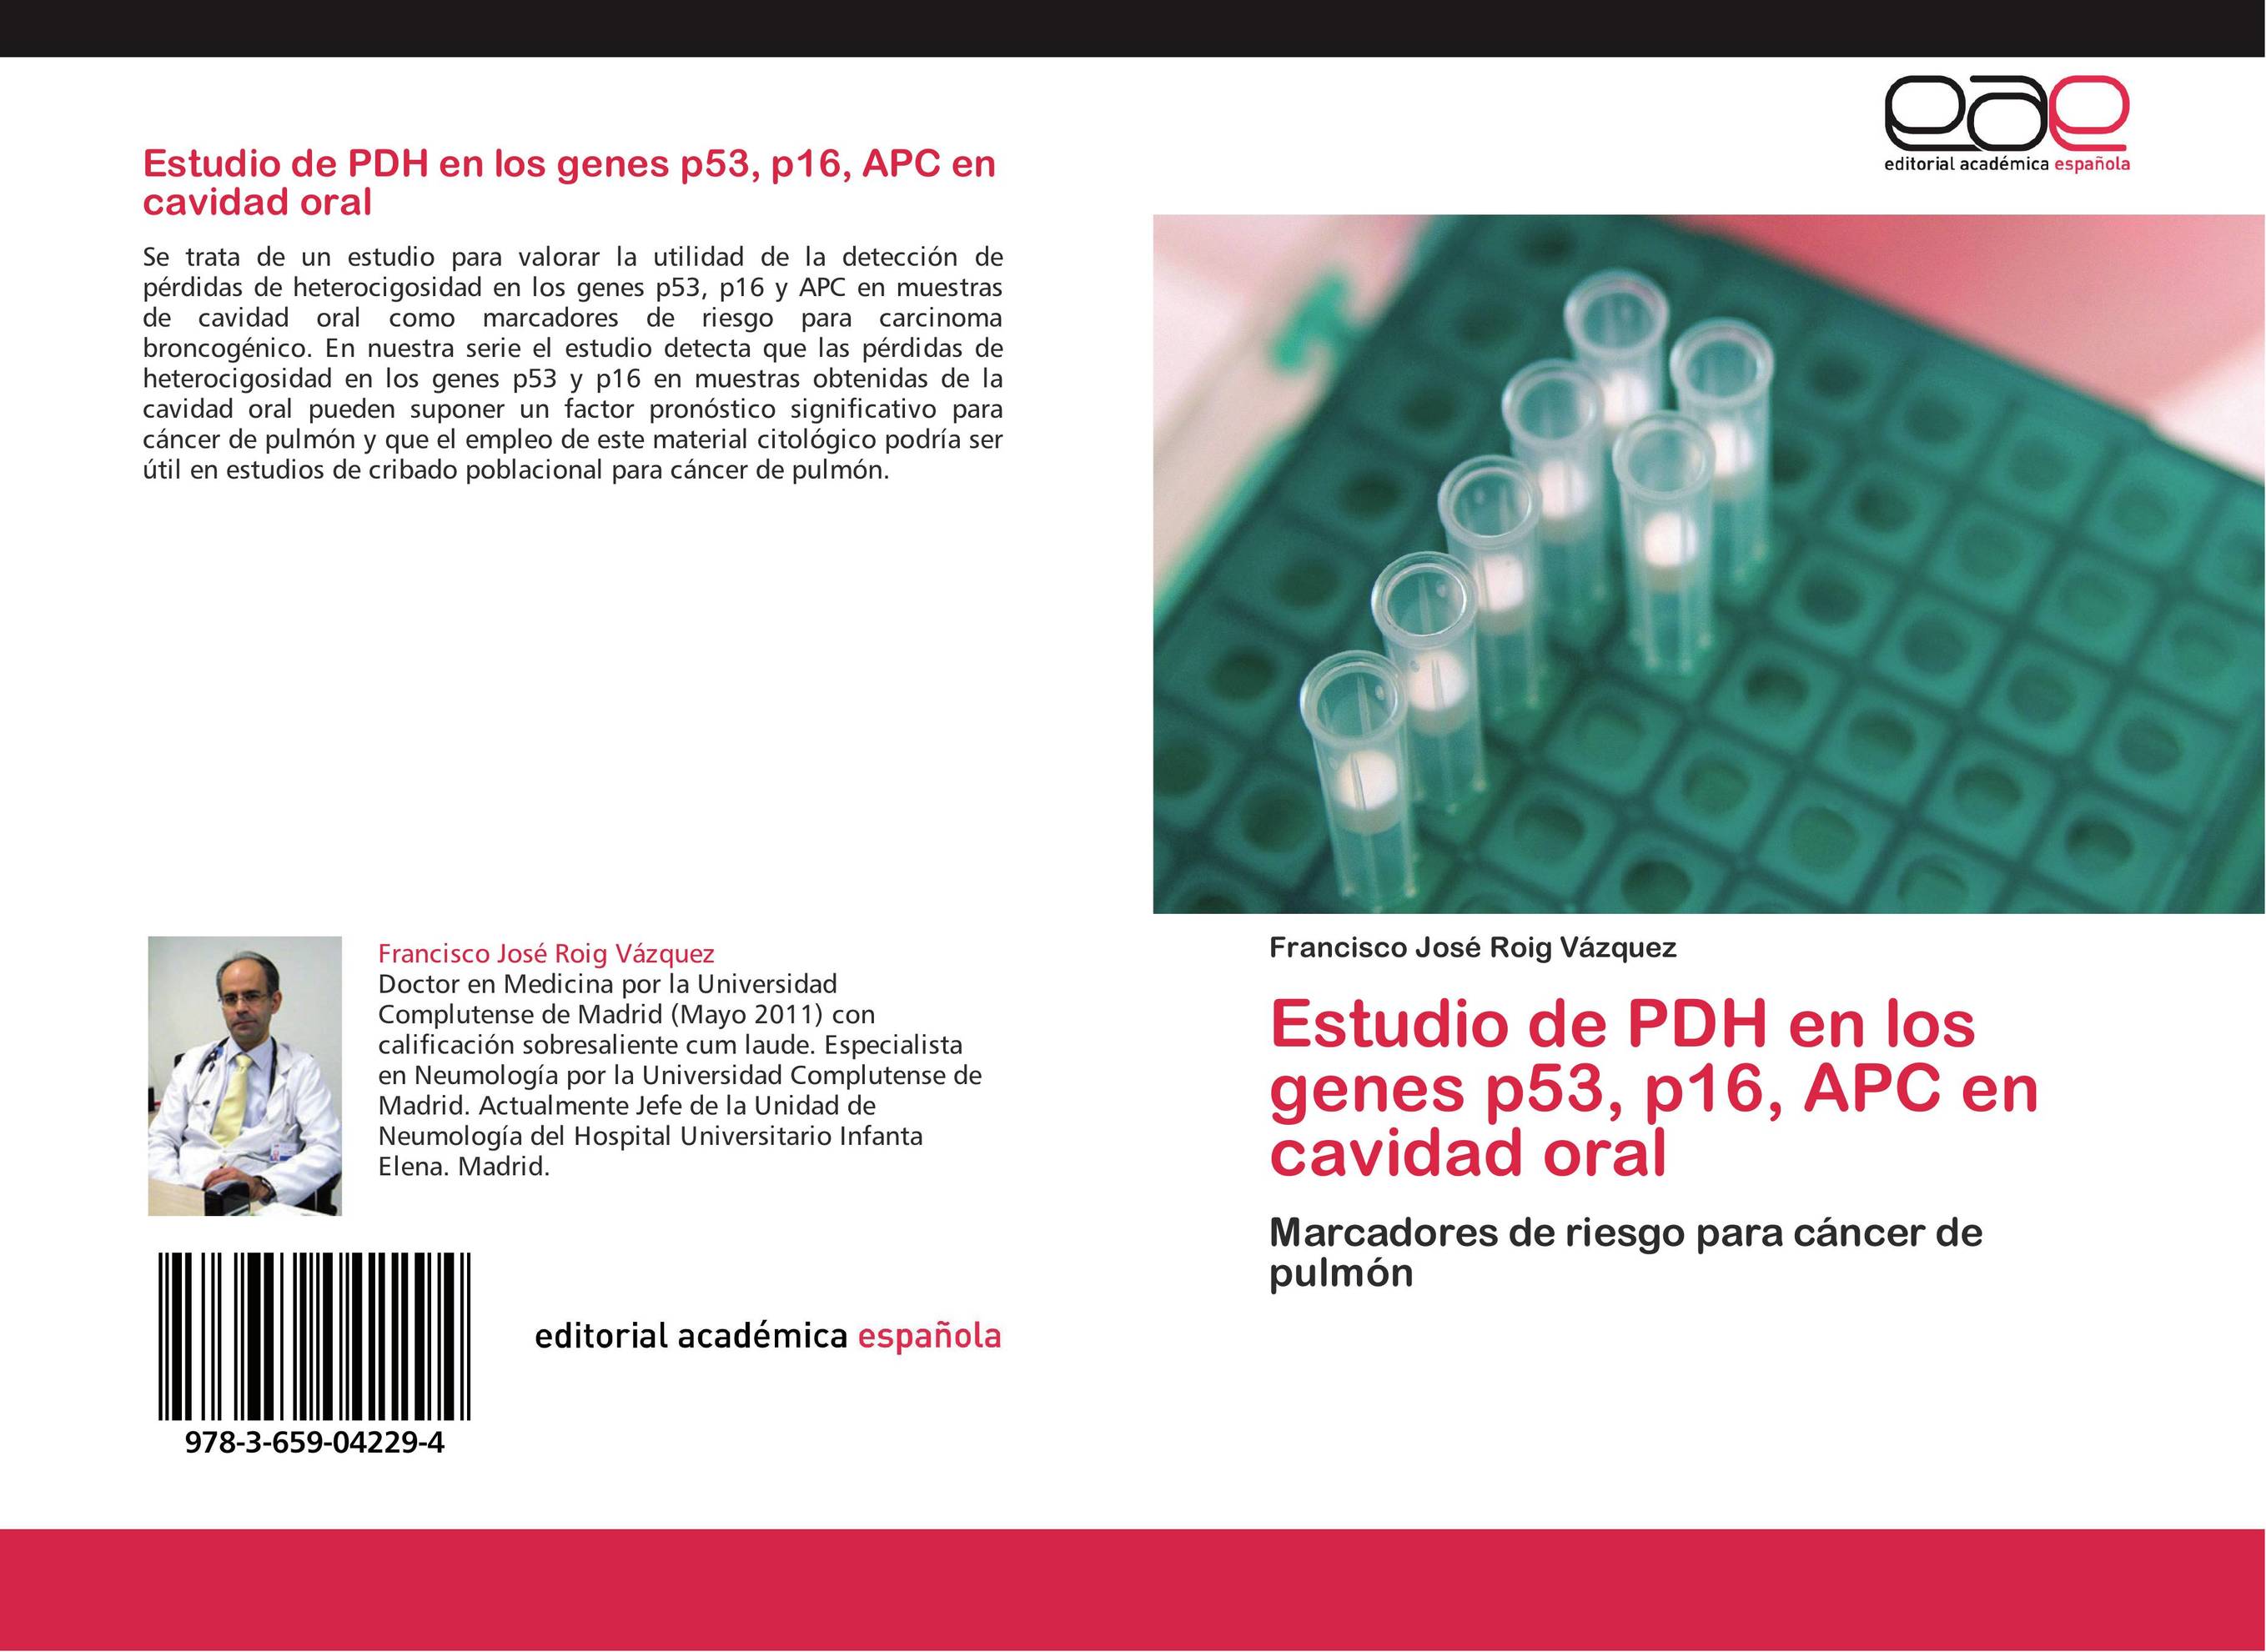 Estudio de PDH en los genes p53, p16, APC en cavidad oral